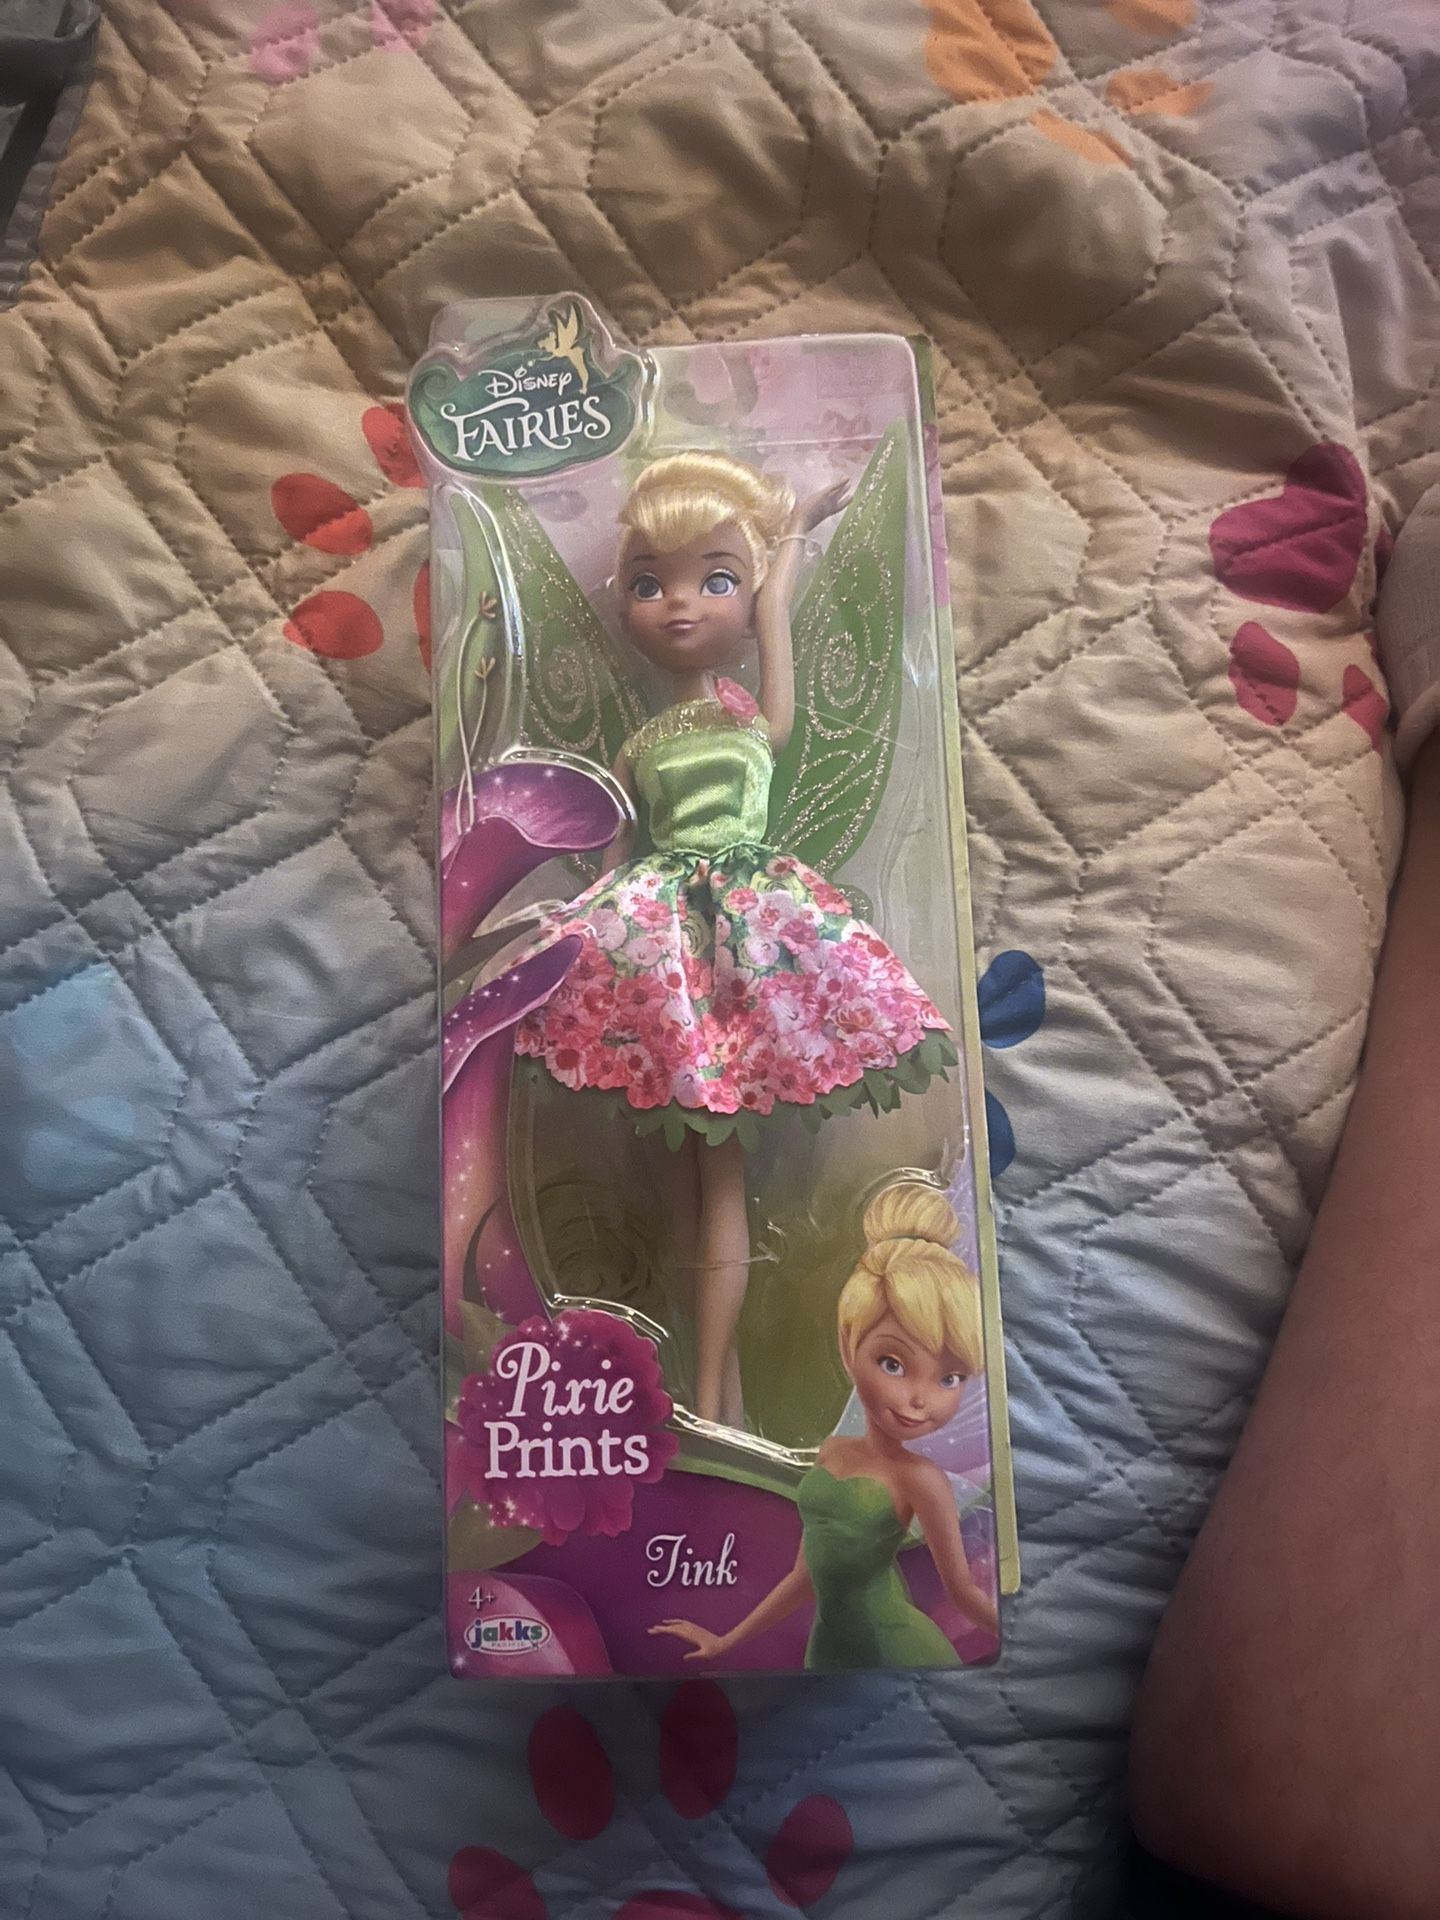 Disney Fairies Pixie Prints Tink